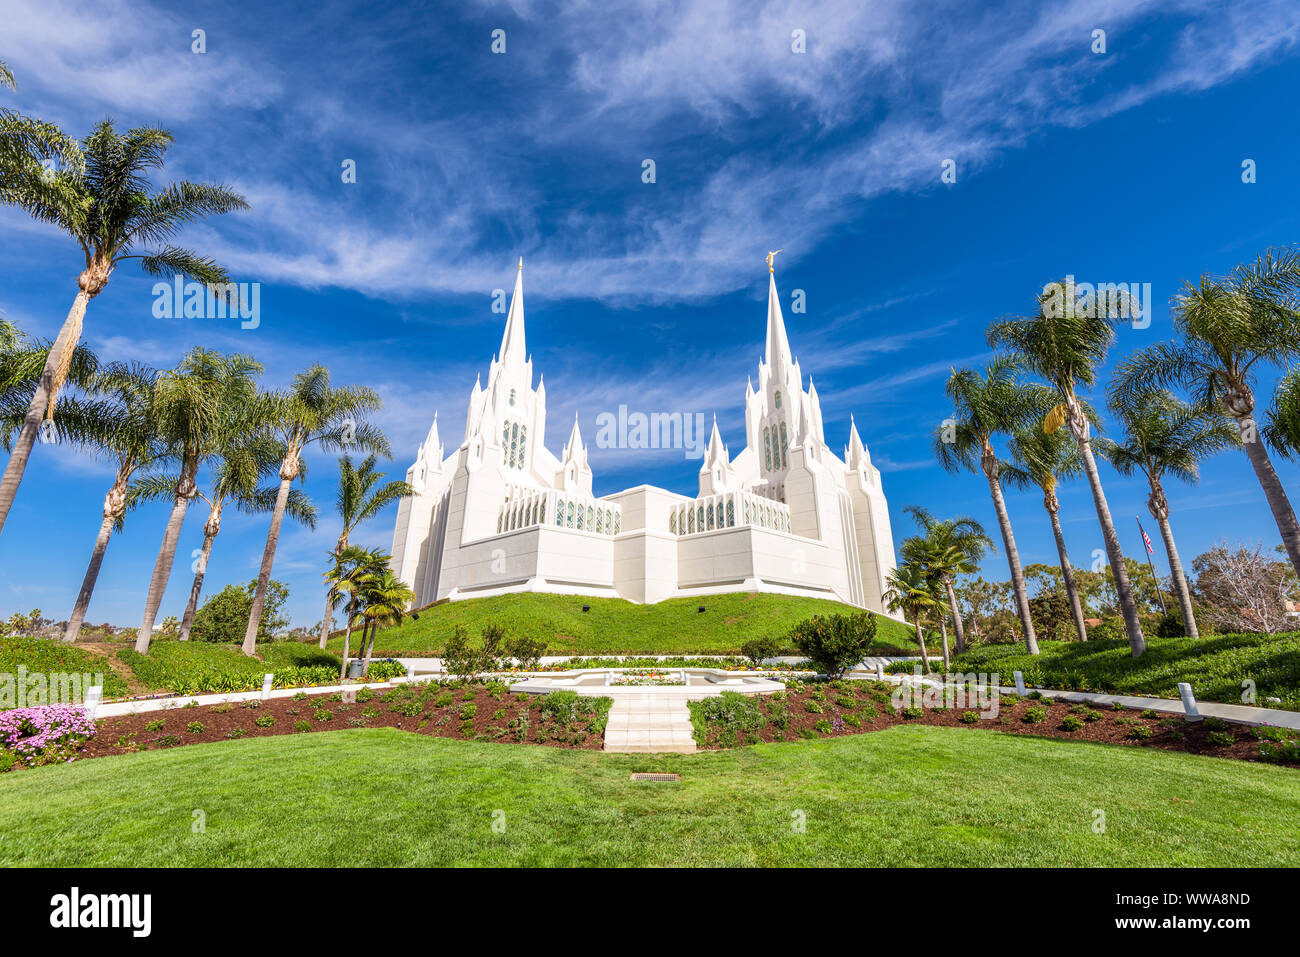 The San Diego California Mormon Temple in La Jolla, California. Stock Photo